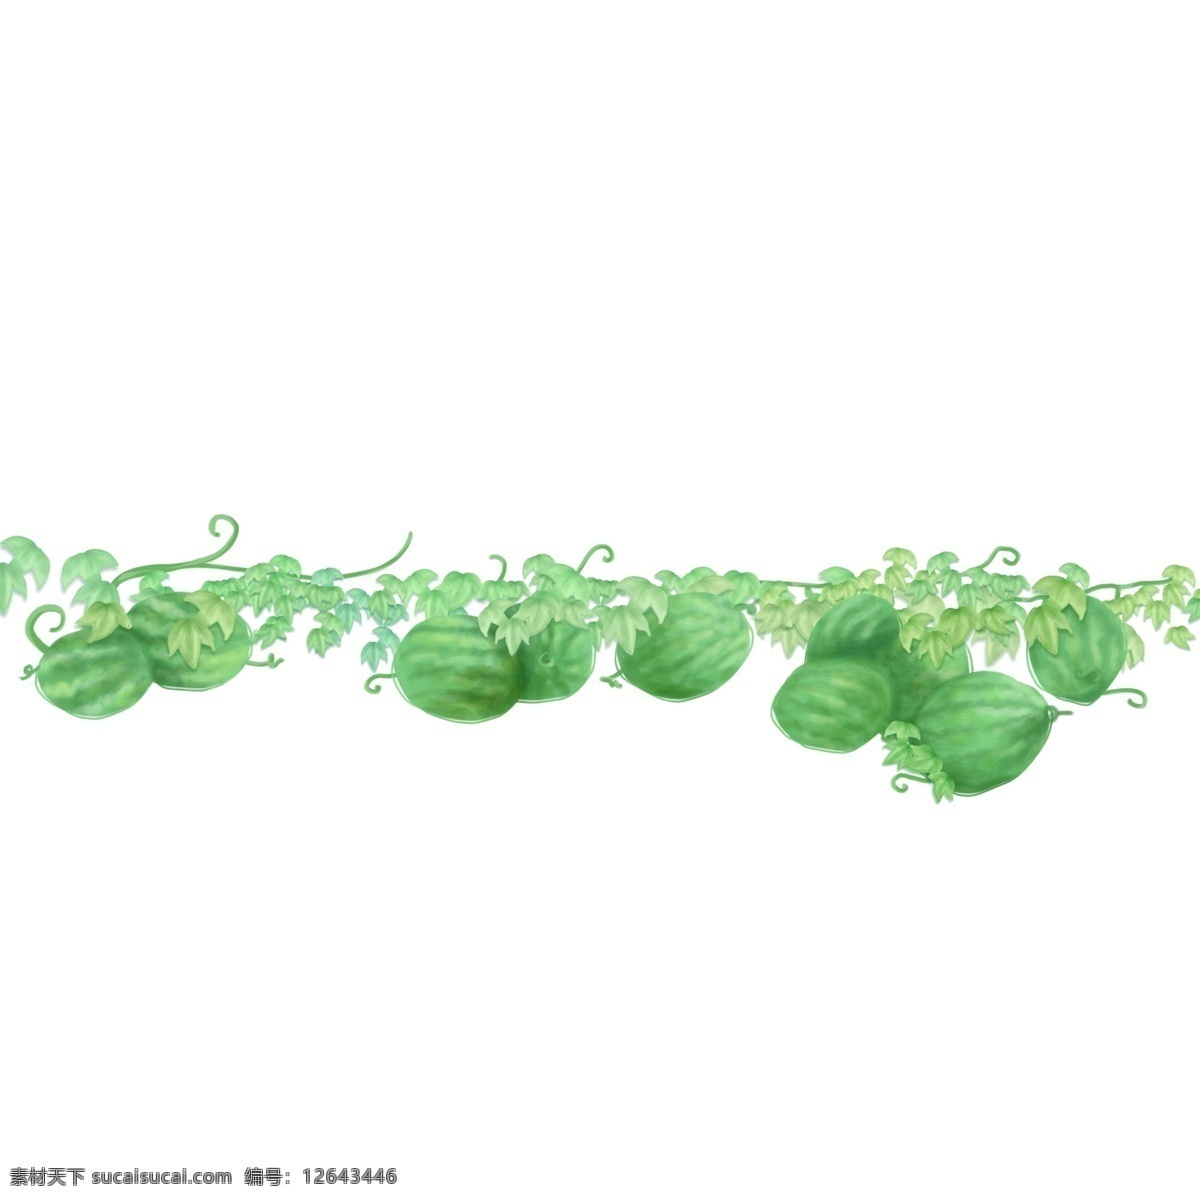 夏天 夏季 西瓜 手绘 插画 西瓜地 食物 水果 清凉 绿色 吃 叶子 藤 植物 卡通